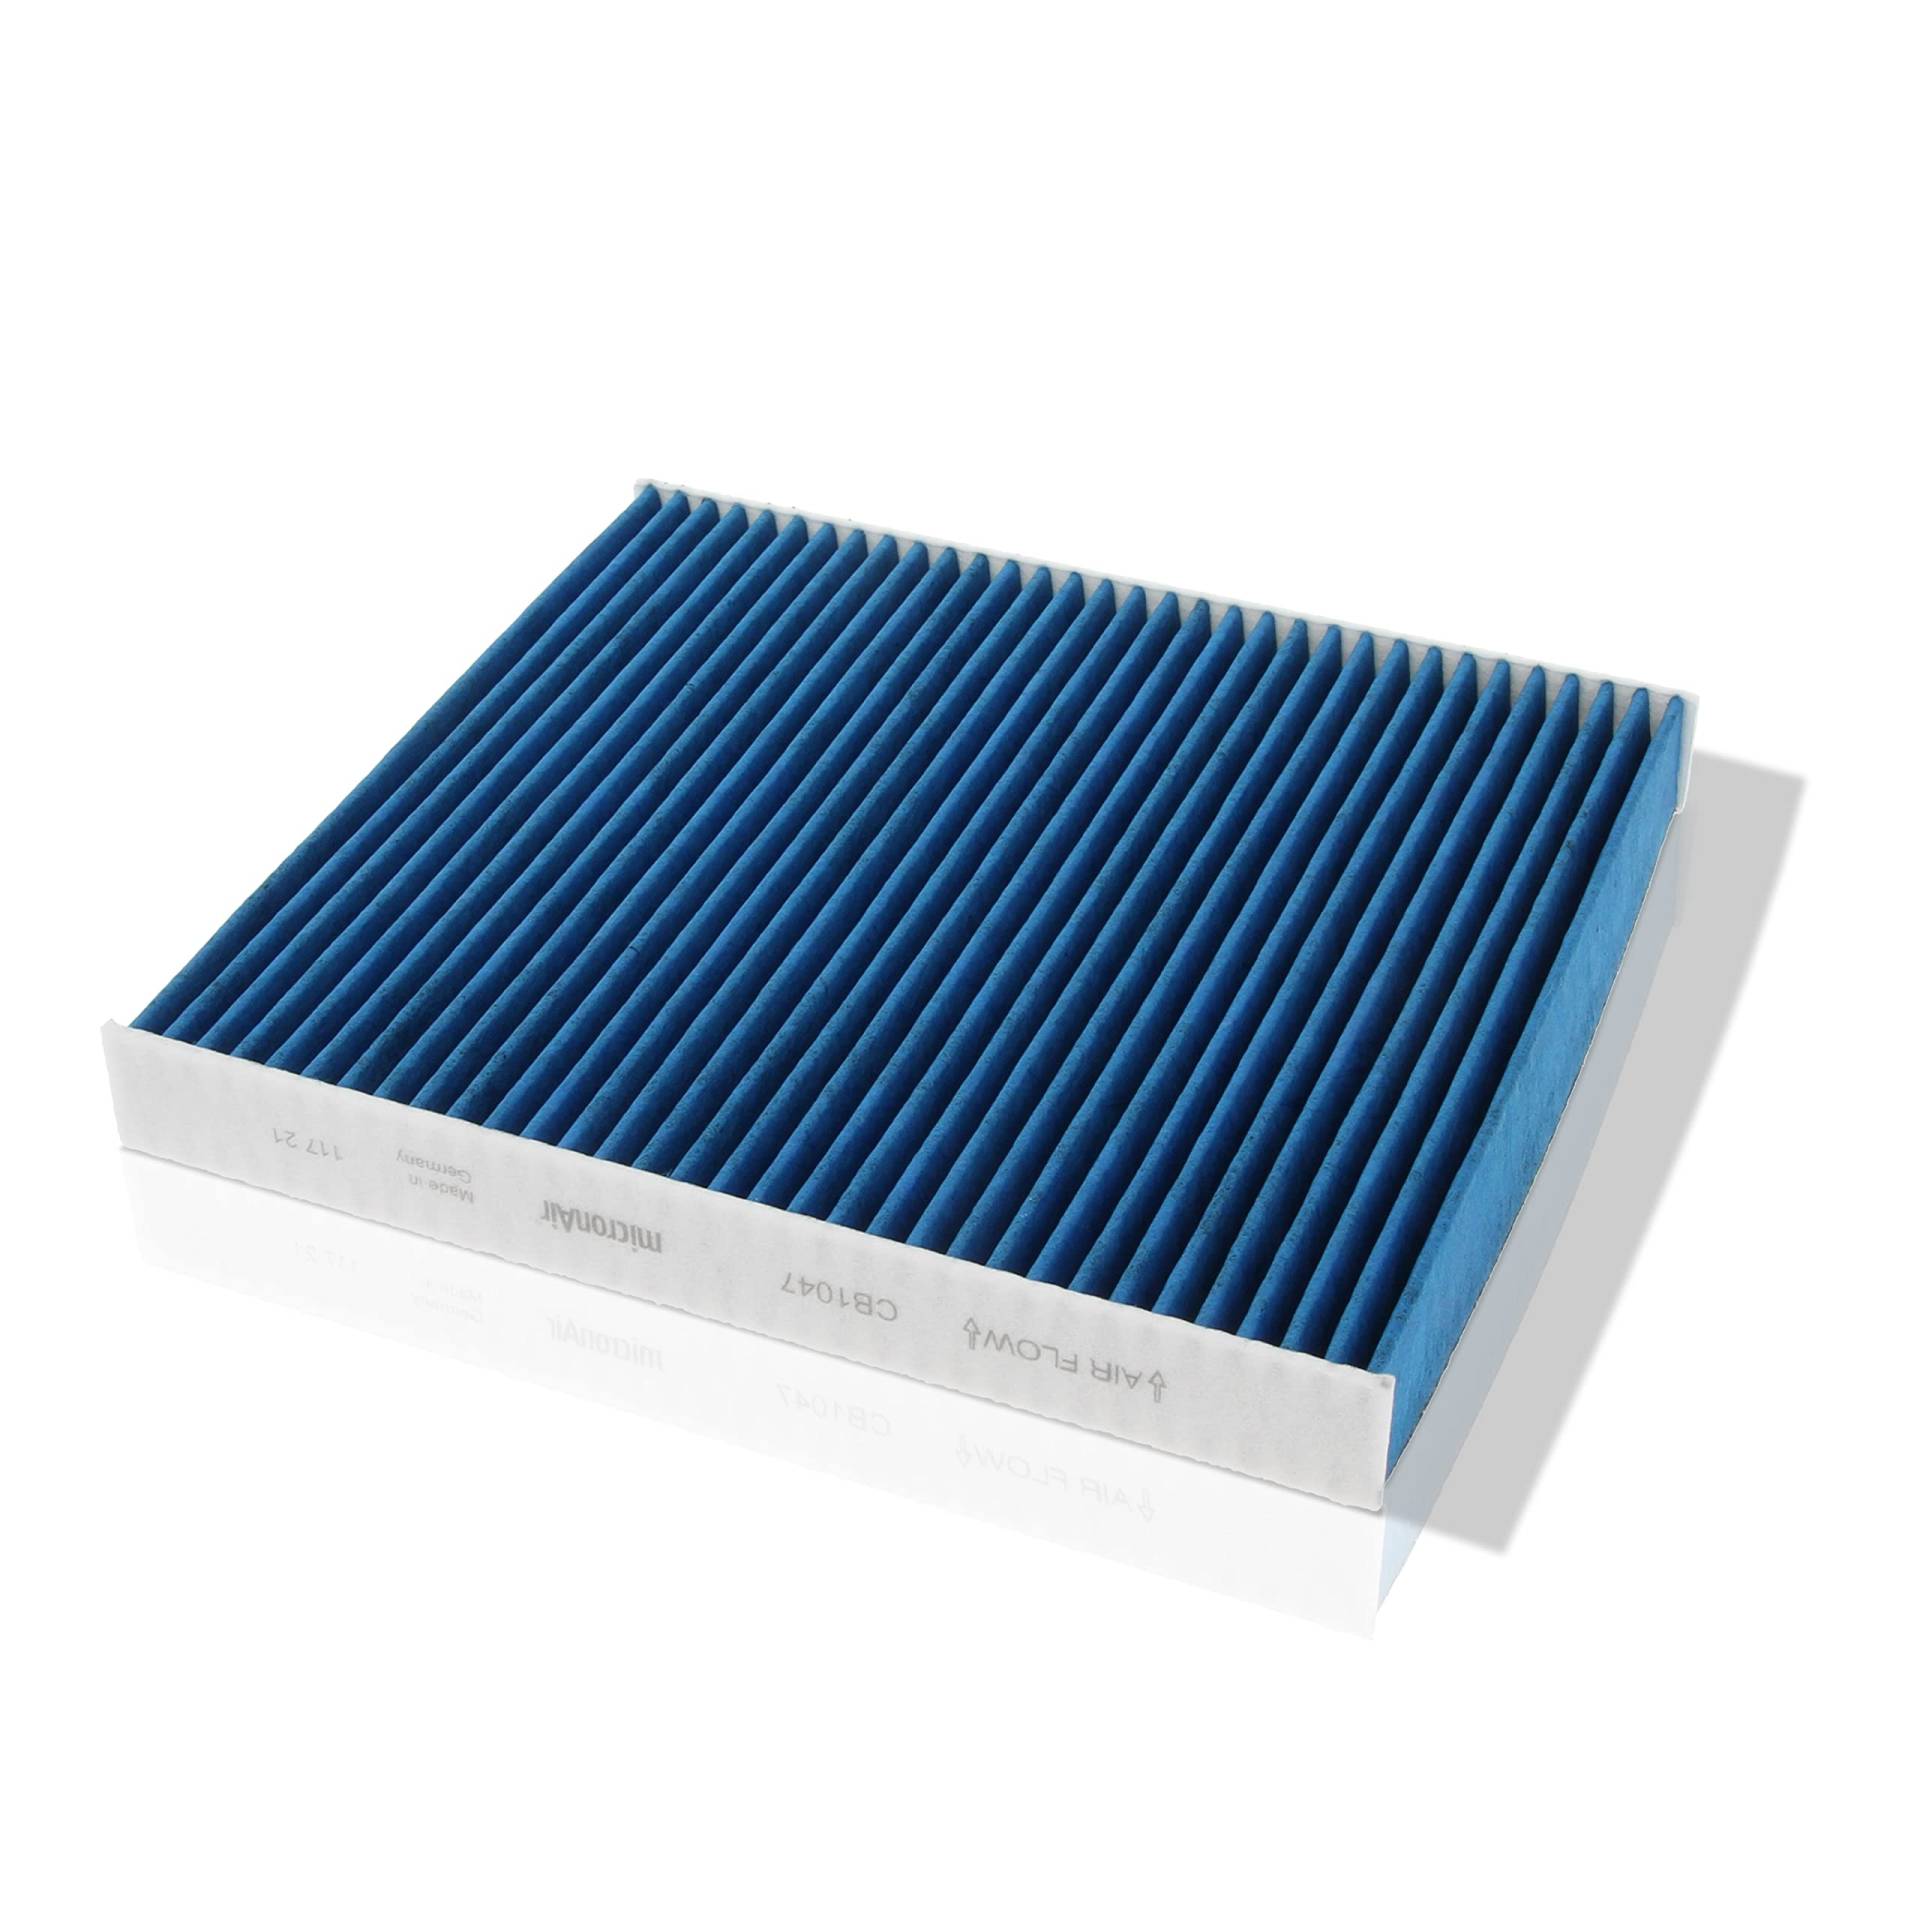 Corteco micronAir blue 49469992, Innenraumfilter fürs Auto mit 4 Filterschichten für hohe Luftqualität, effektiver Schutz vor viralen Aerosolen, Pollen & Allergenen, Feinstaub & Gasen – für PKW von Corteco